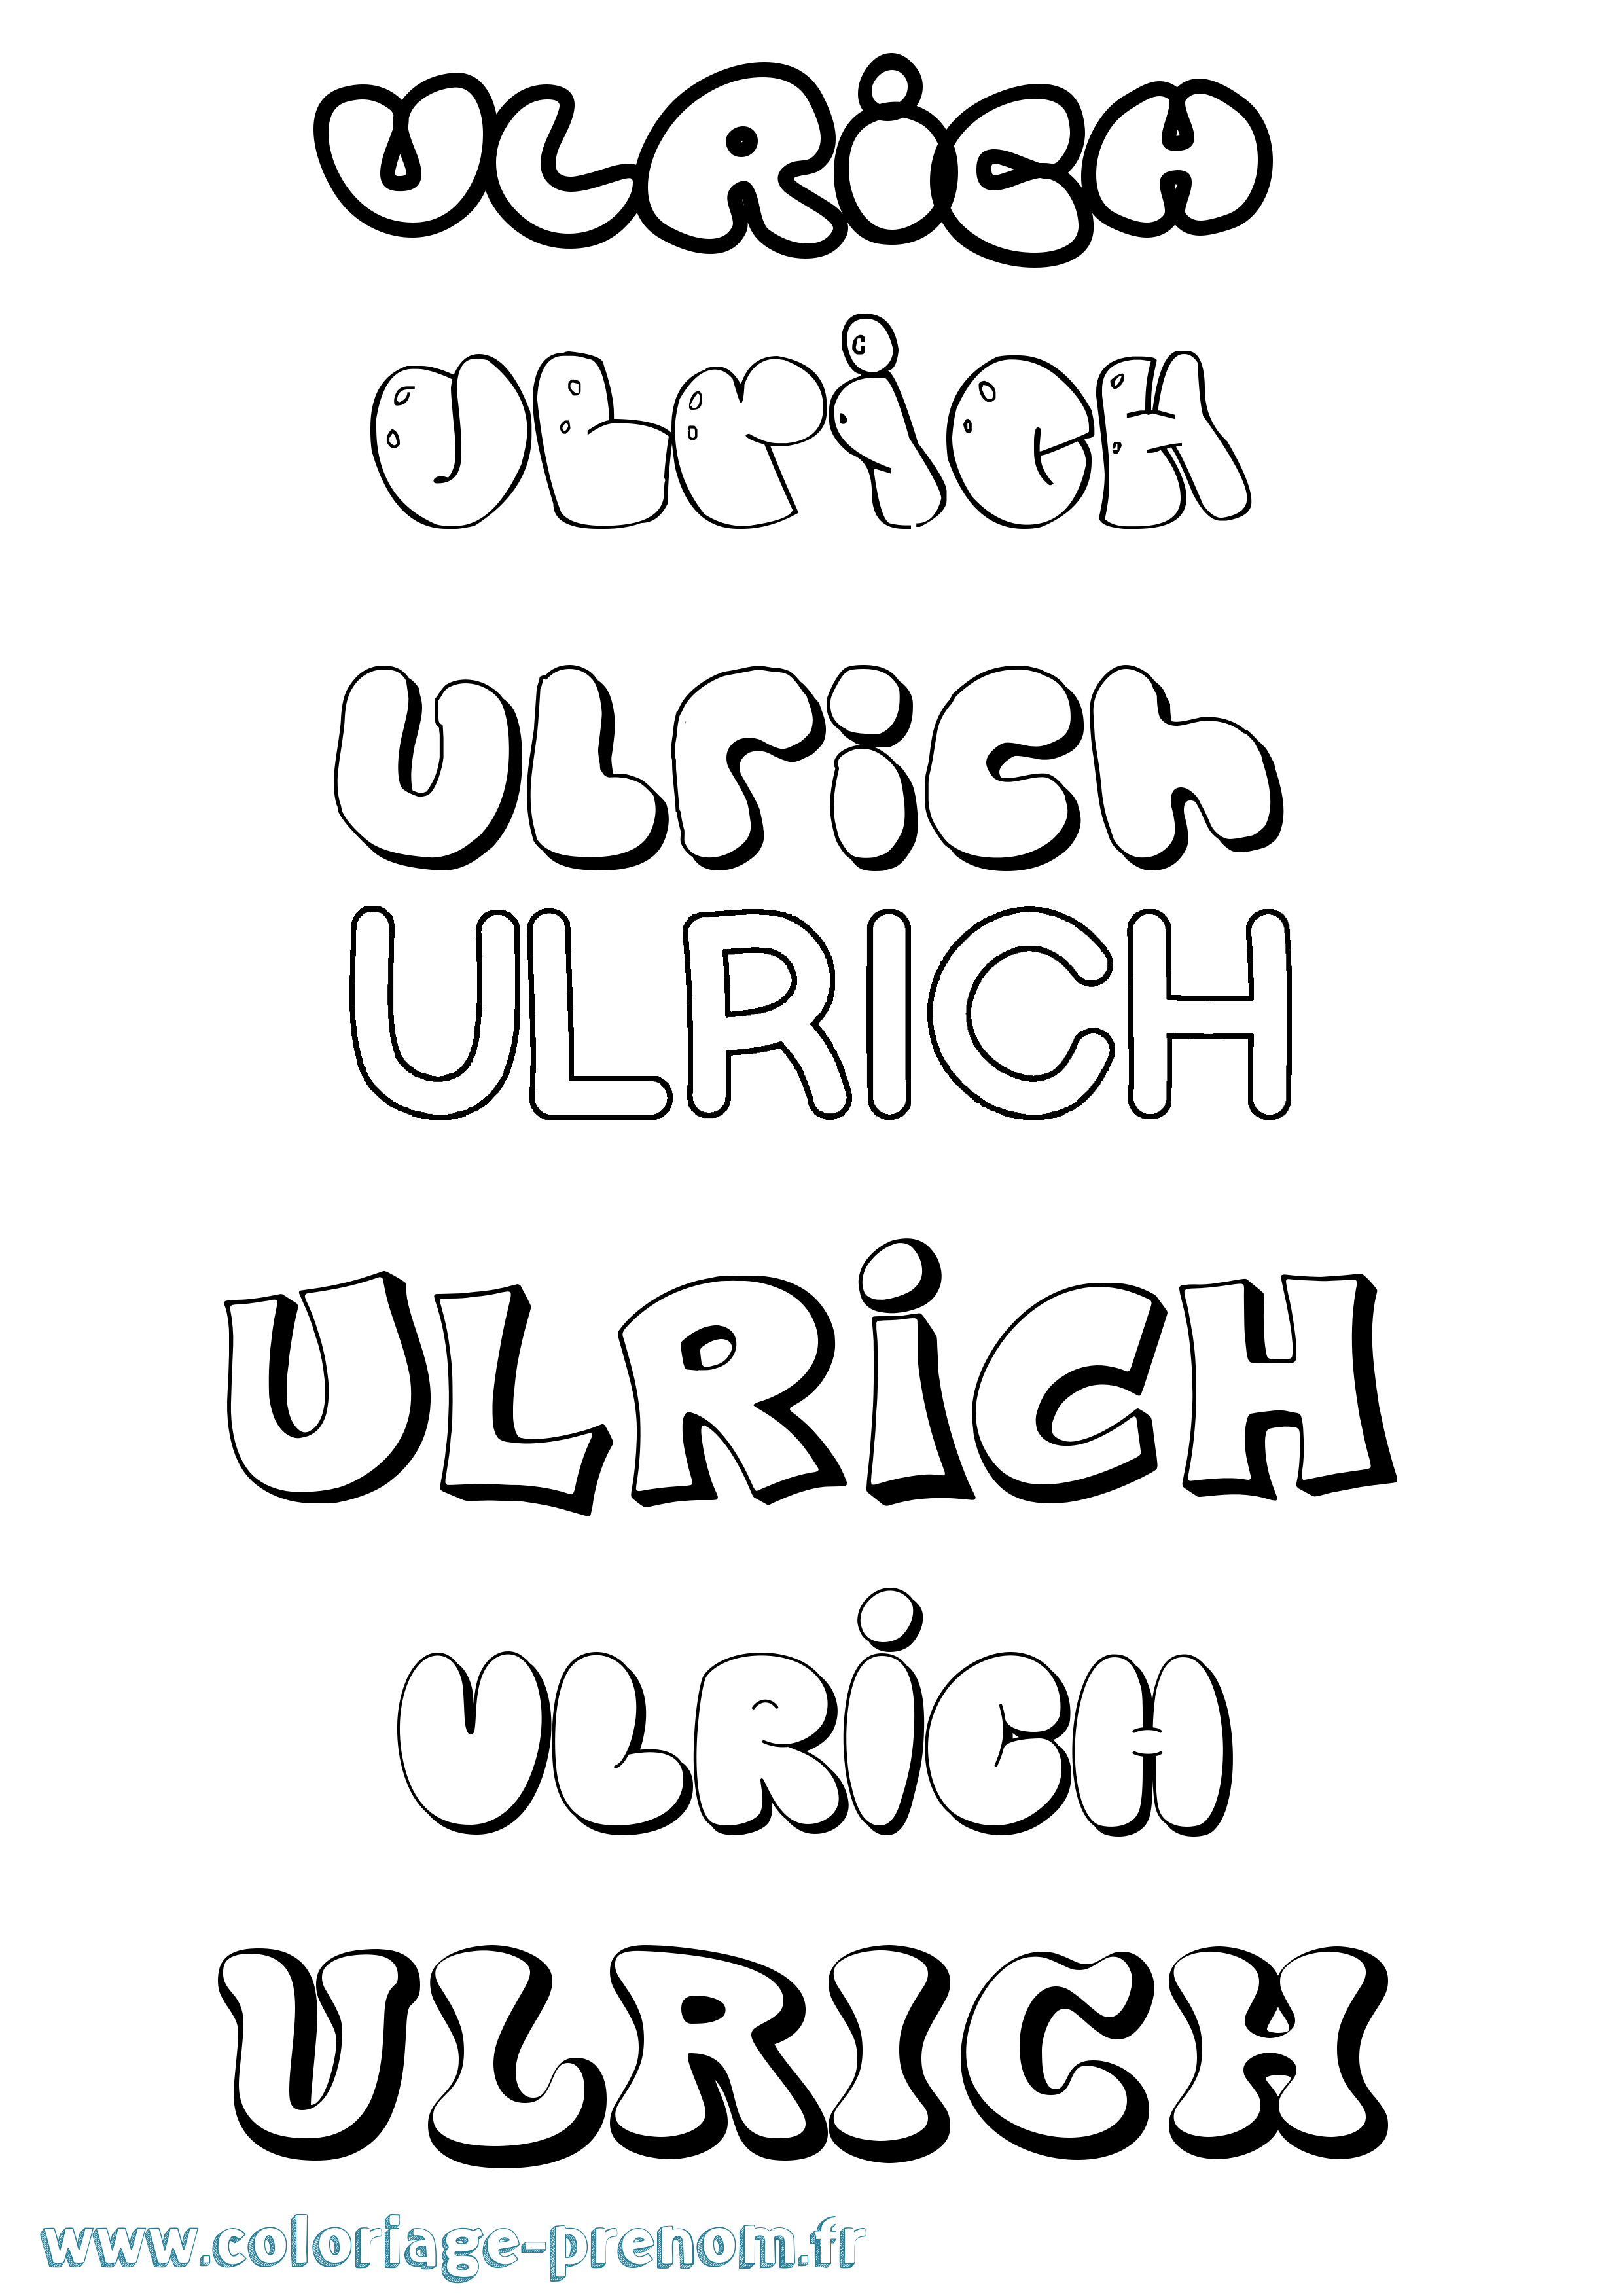 Coloriage prénom Ulrich Bubble